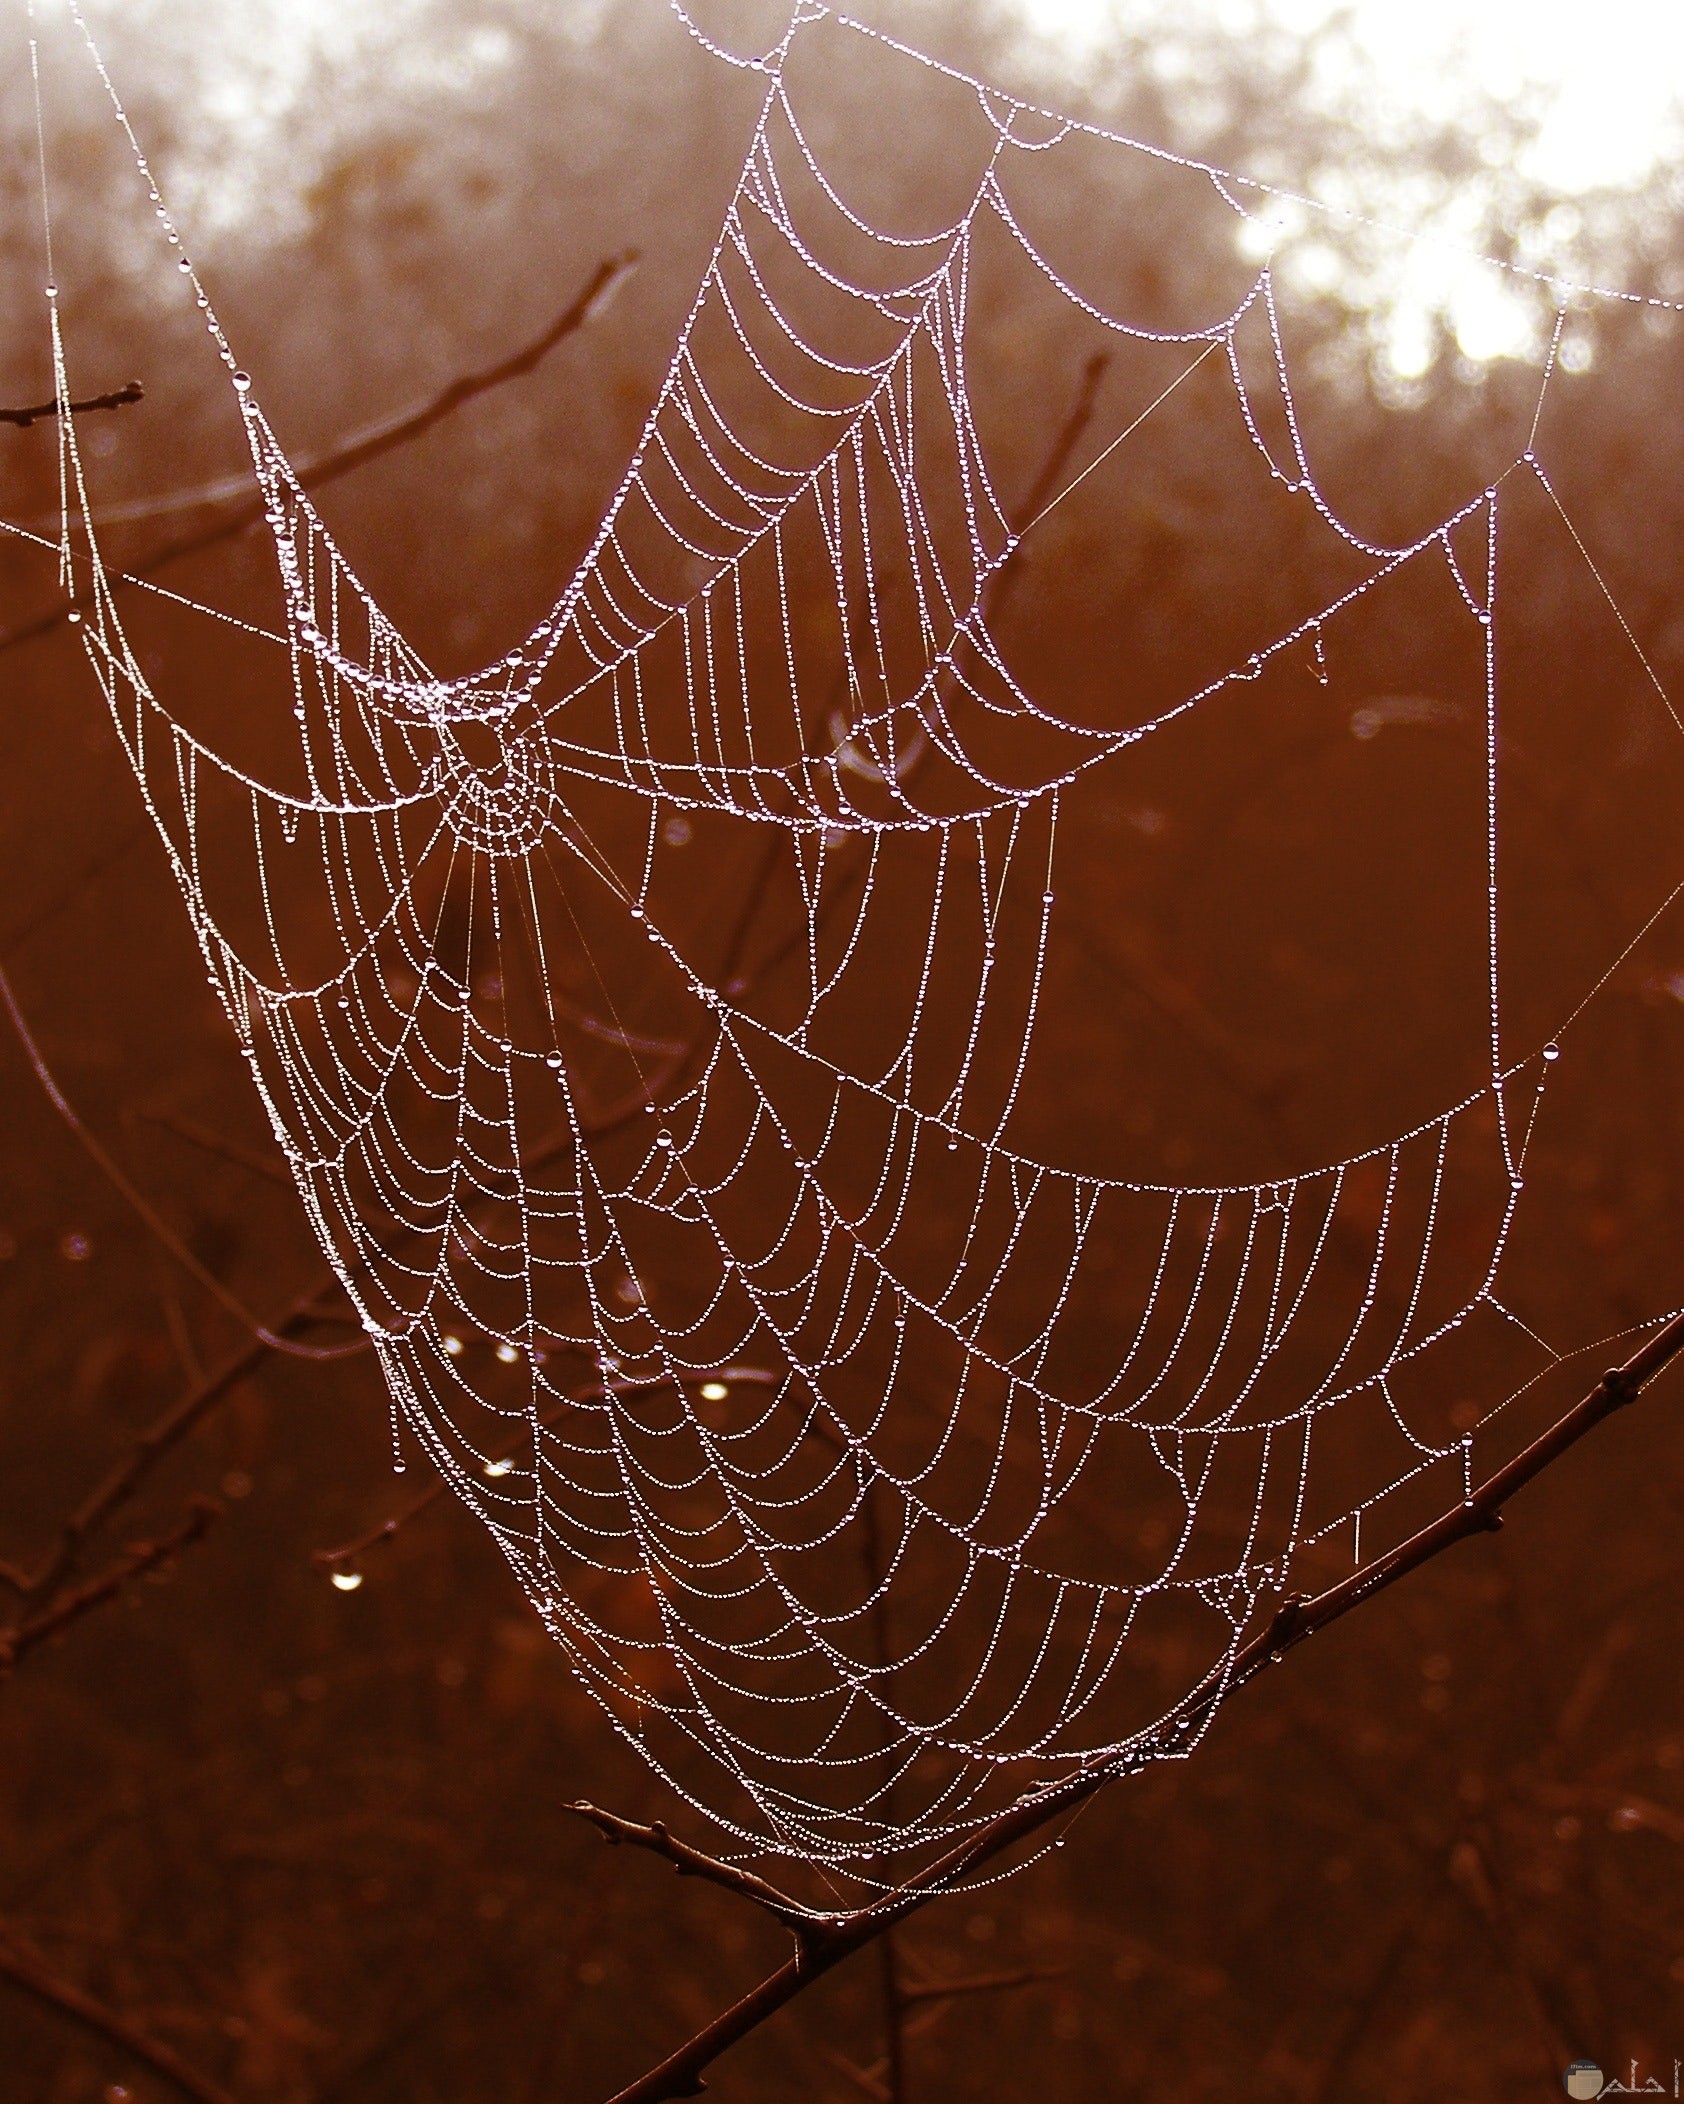 صورة مرعبة مميزة لشبكة عنكبوت مخيفة في الغابة